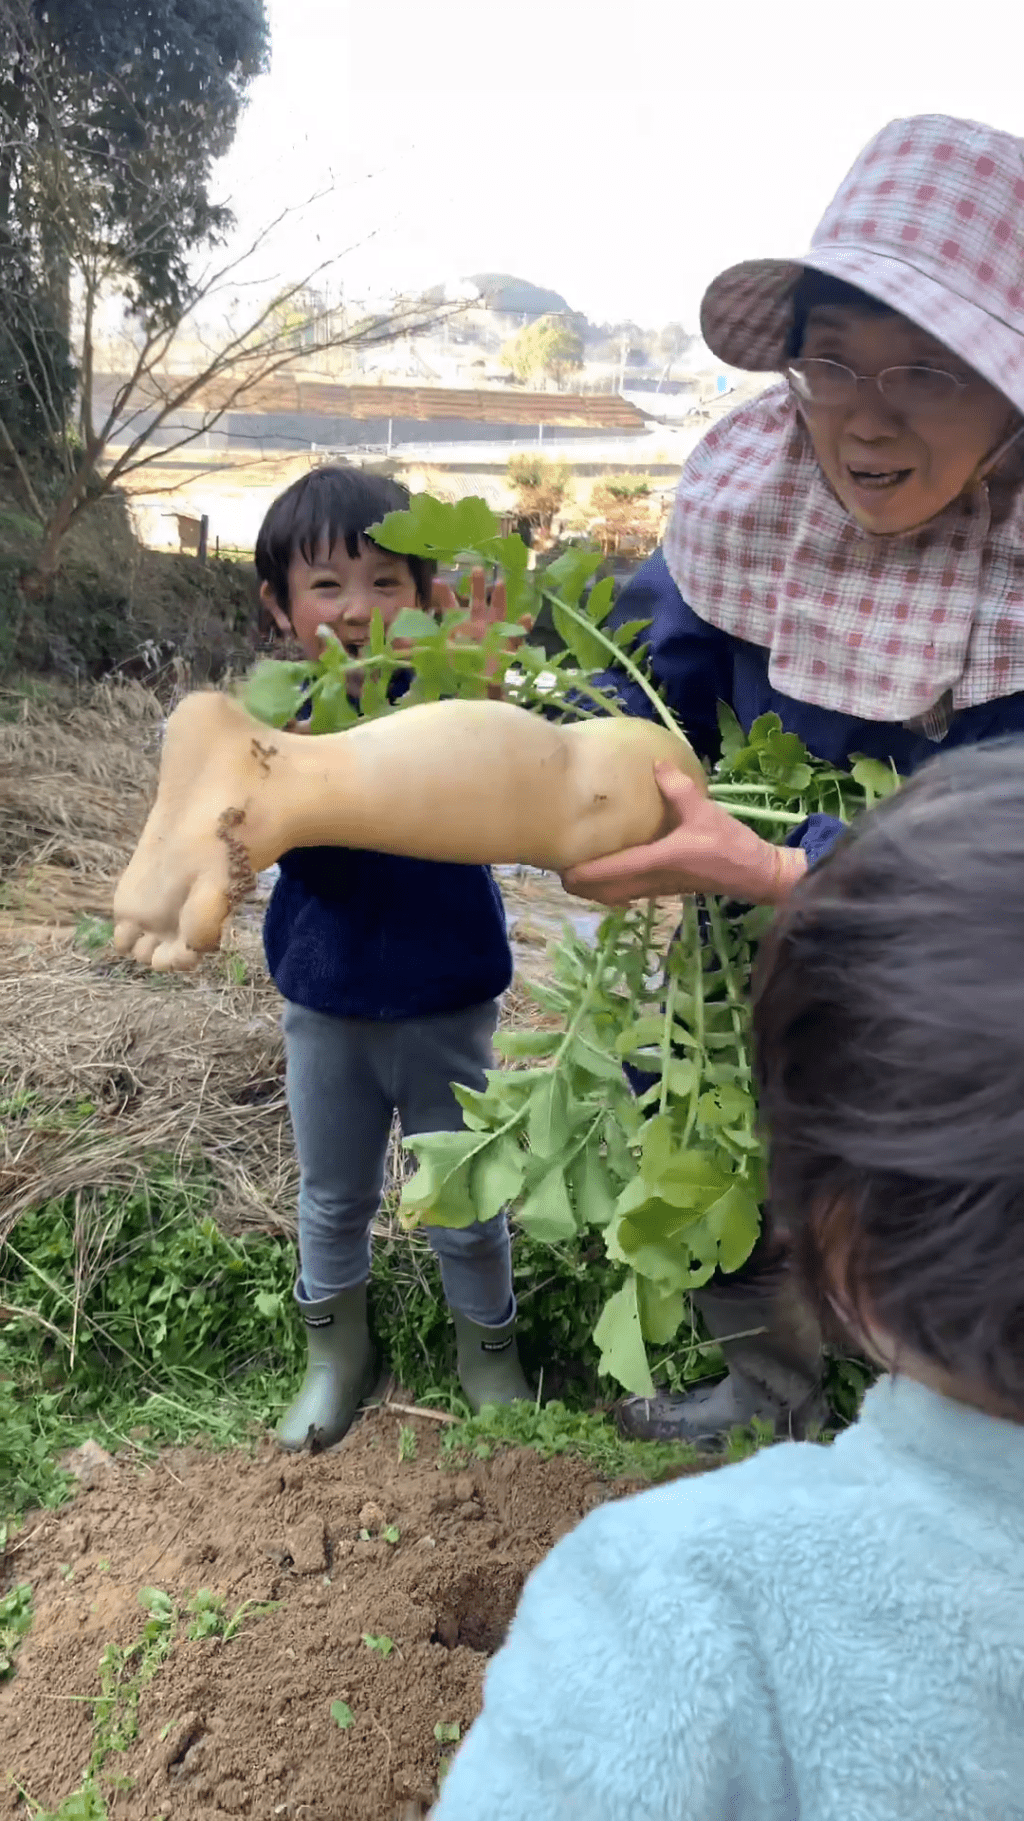 农夫向小童展示「萝卜脚」